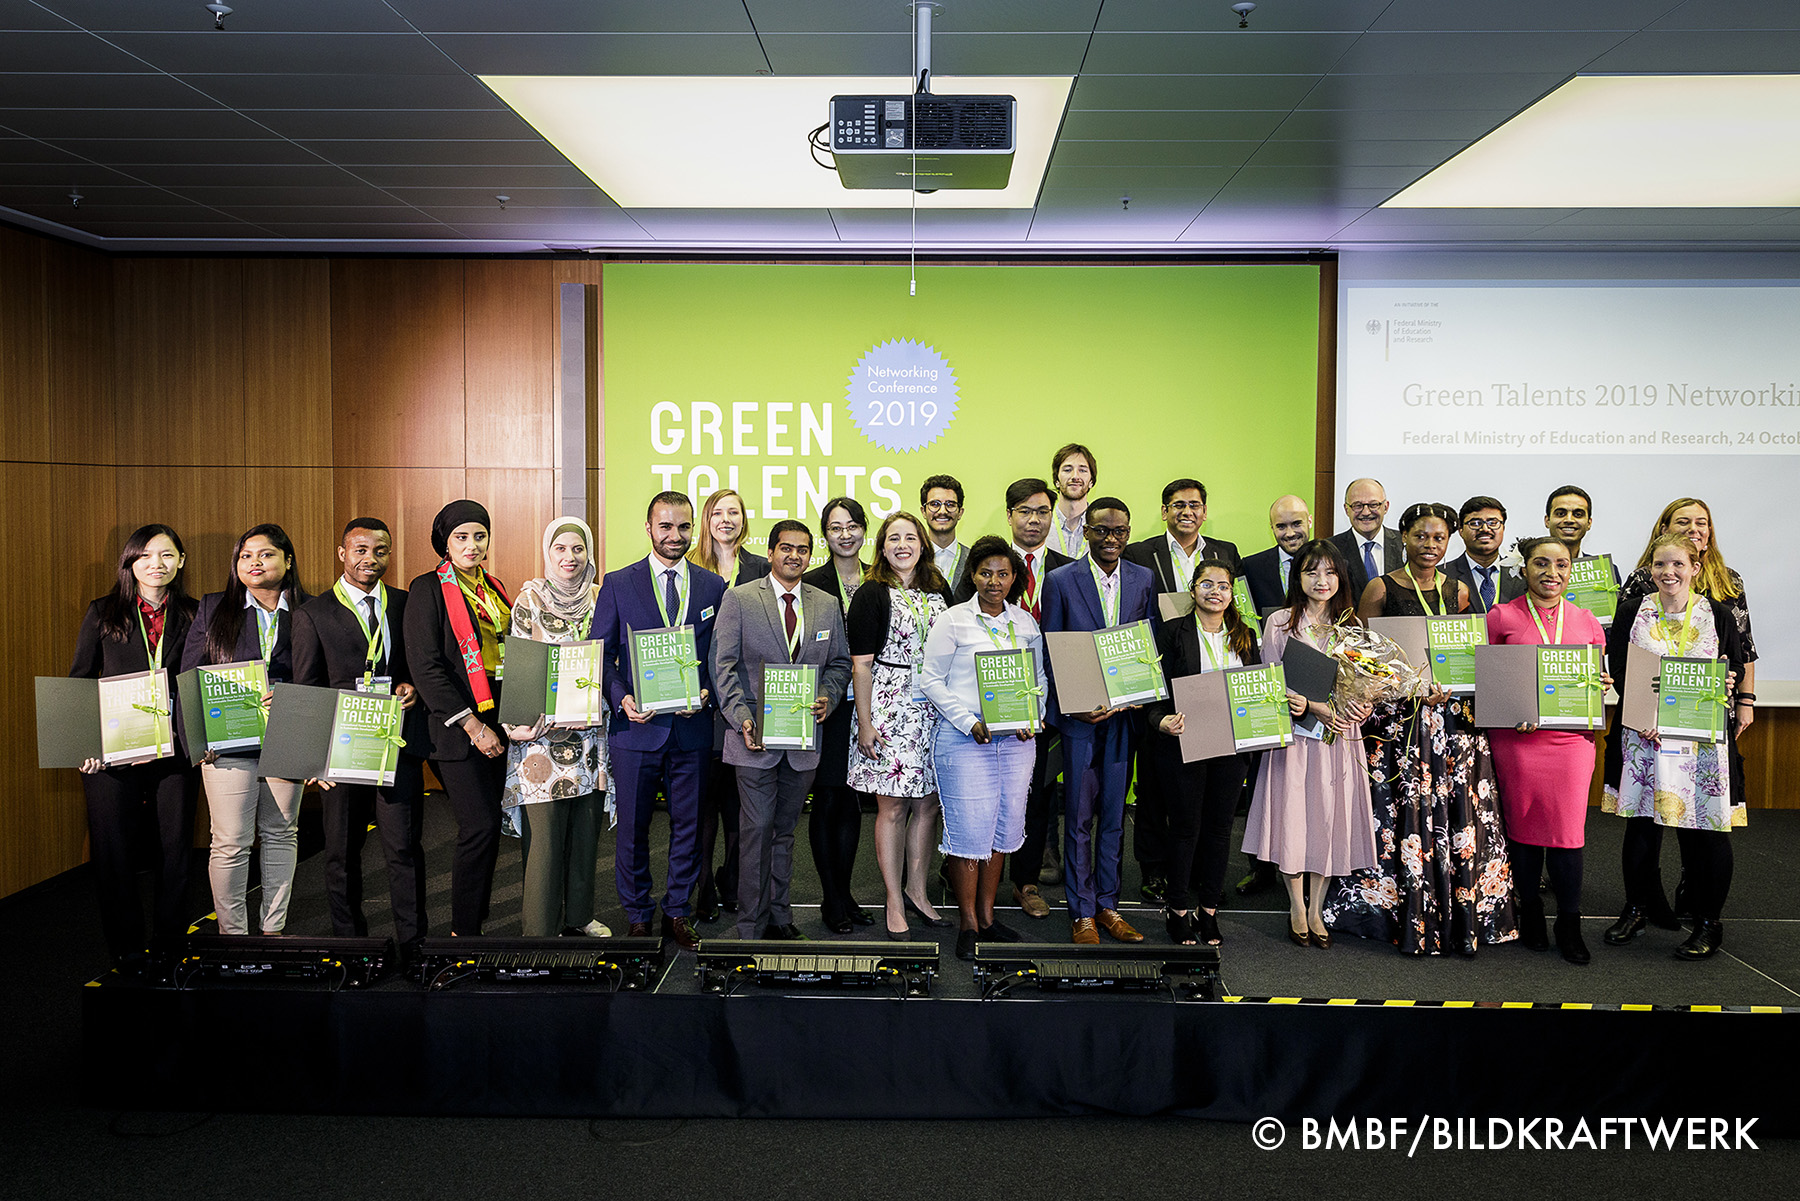 Gruppenfoto der Green Talents 2019